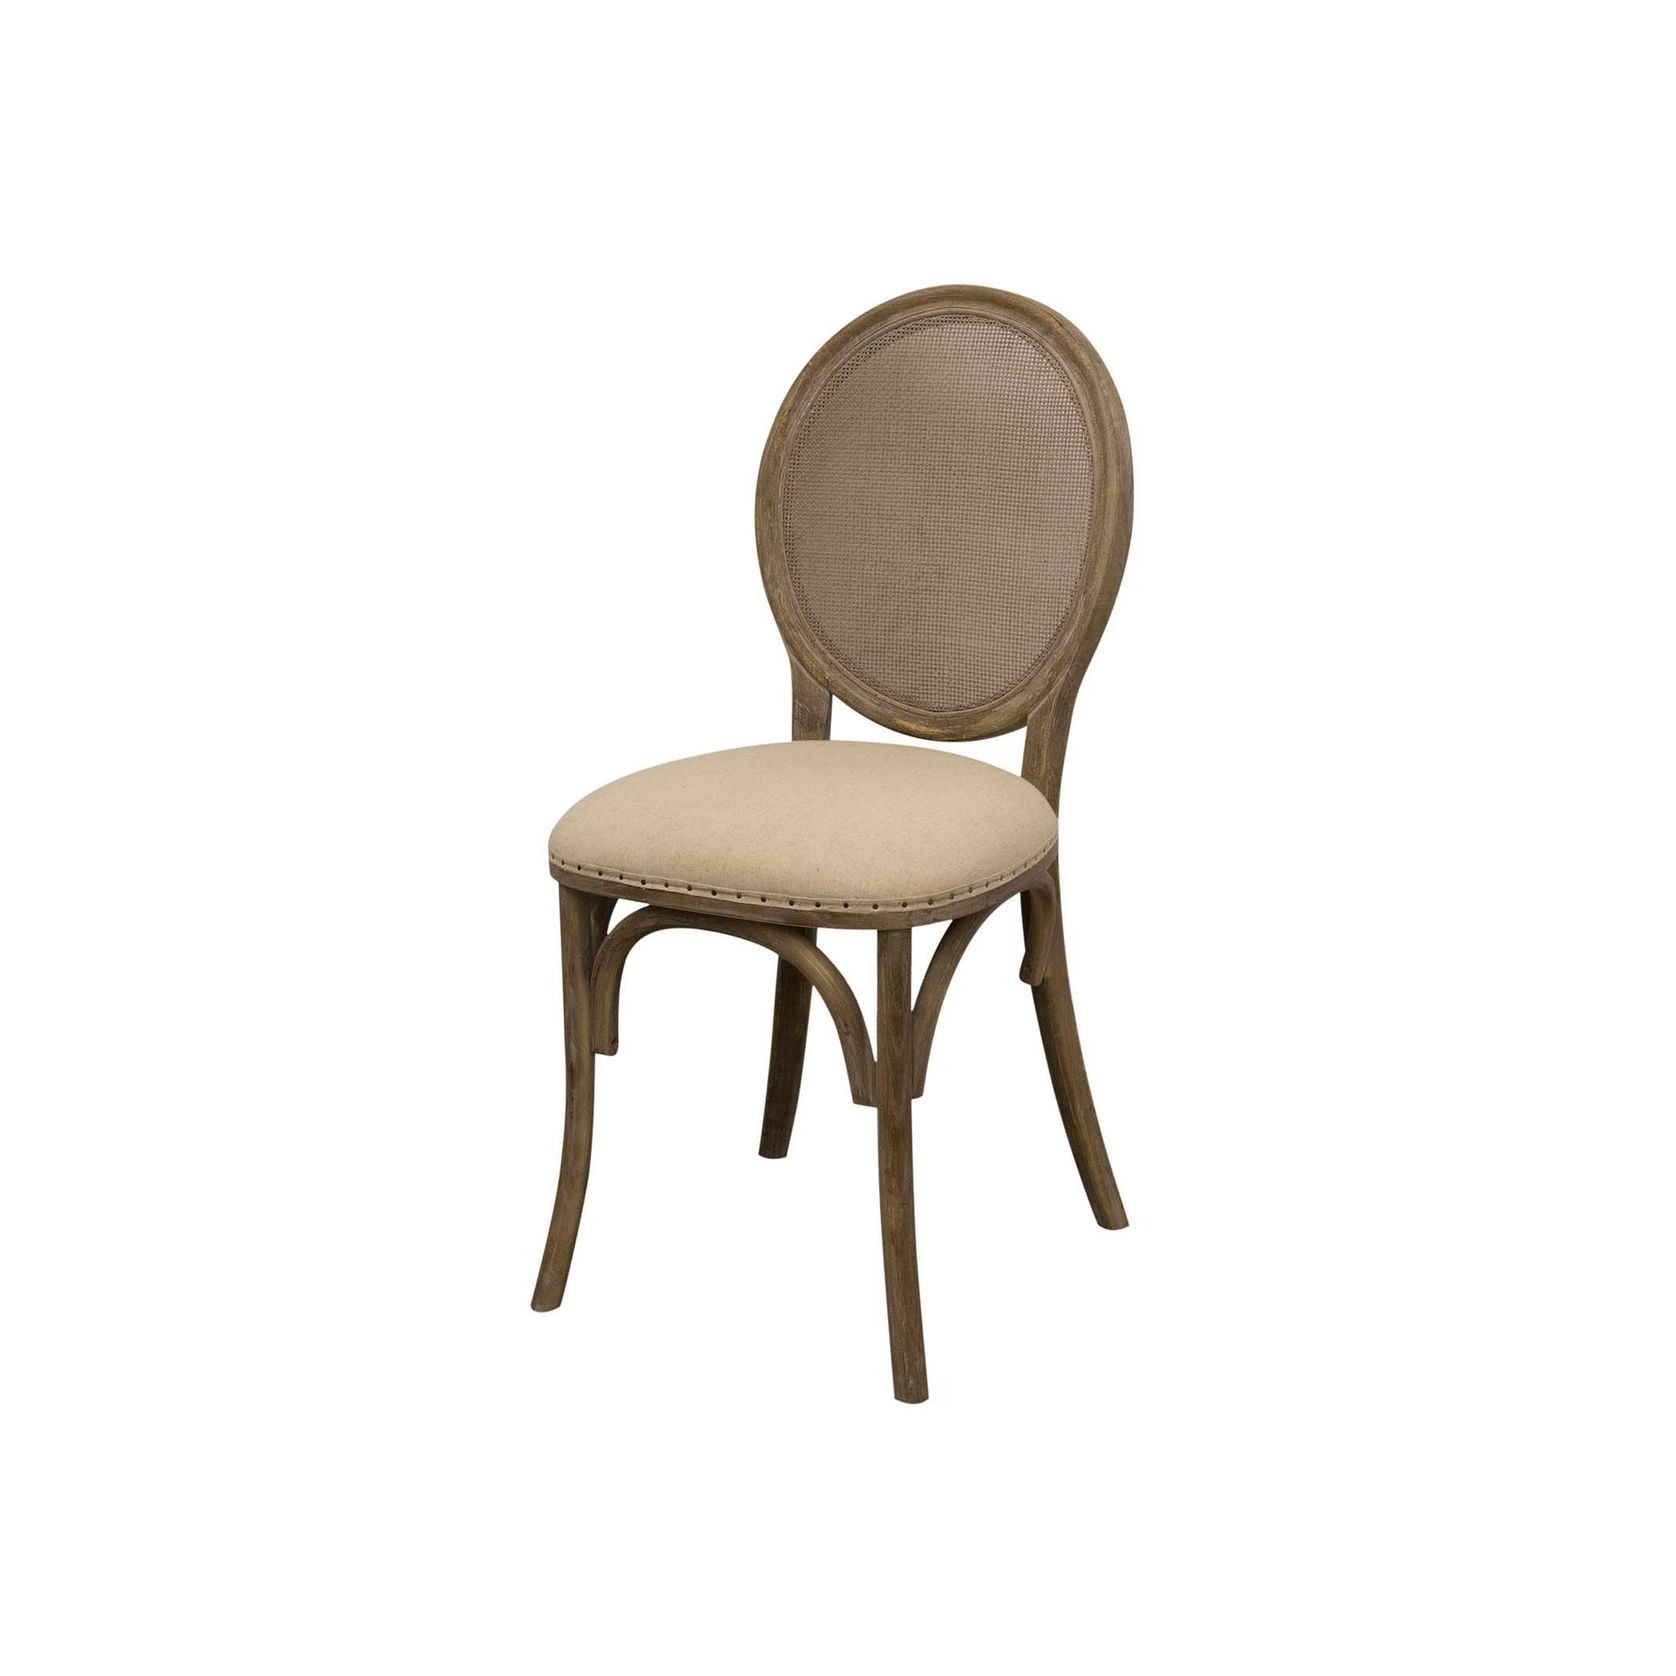 Maretta Chair gallery detail image